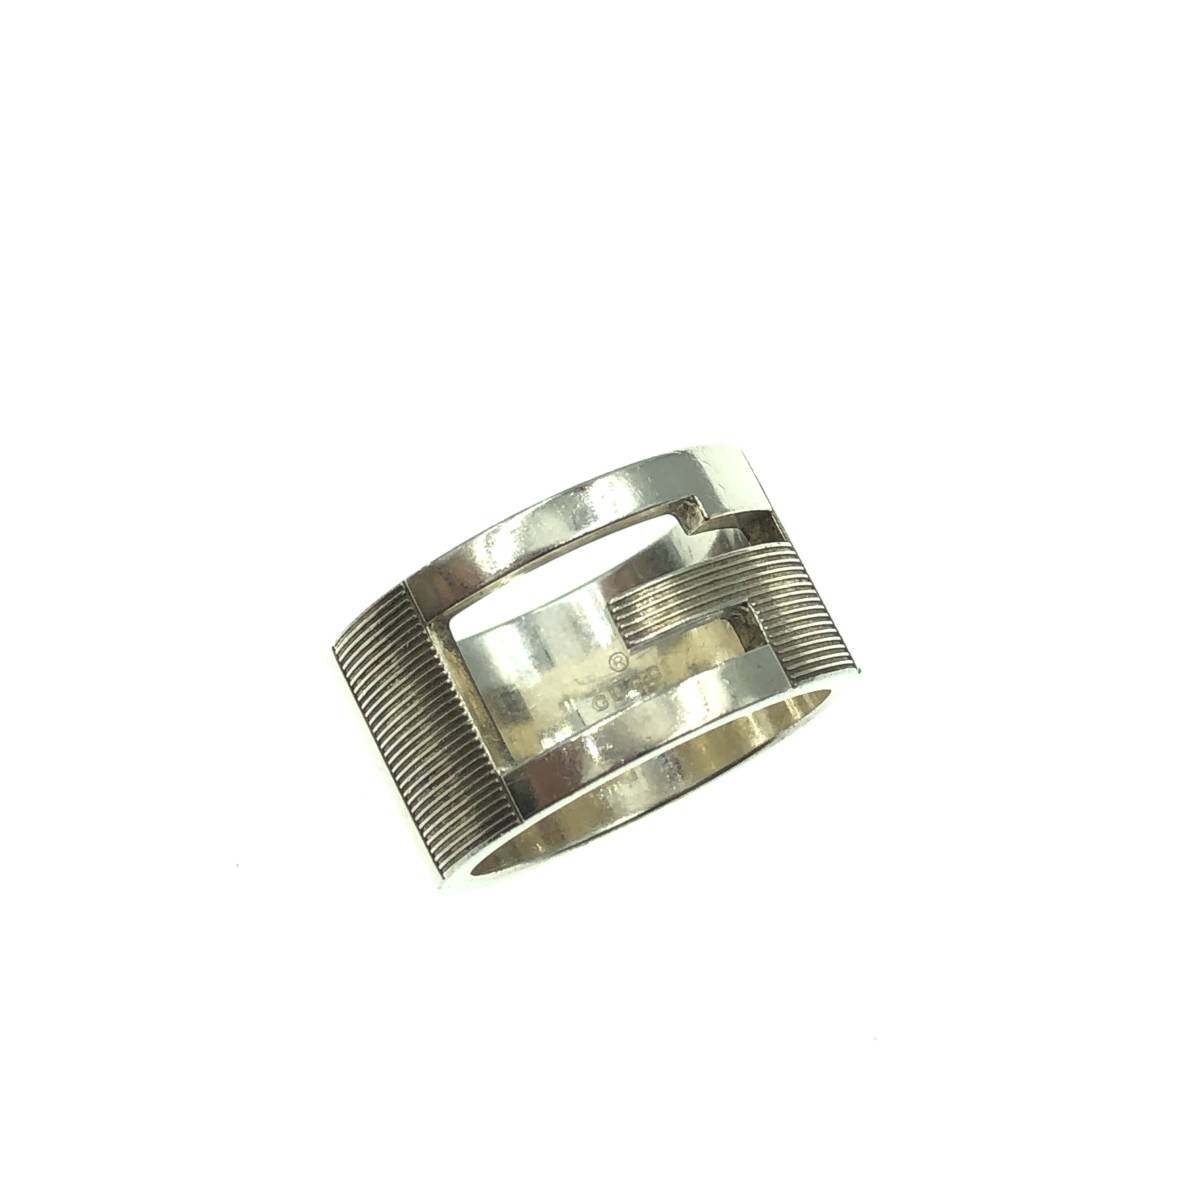 GUCCI カットアウトG リング ワイド 指輪 シルバー 925 #18 メンズ アクセサリー グッチ